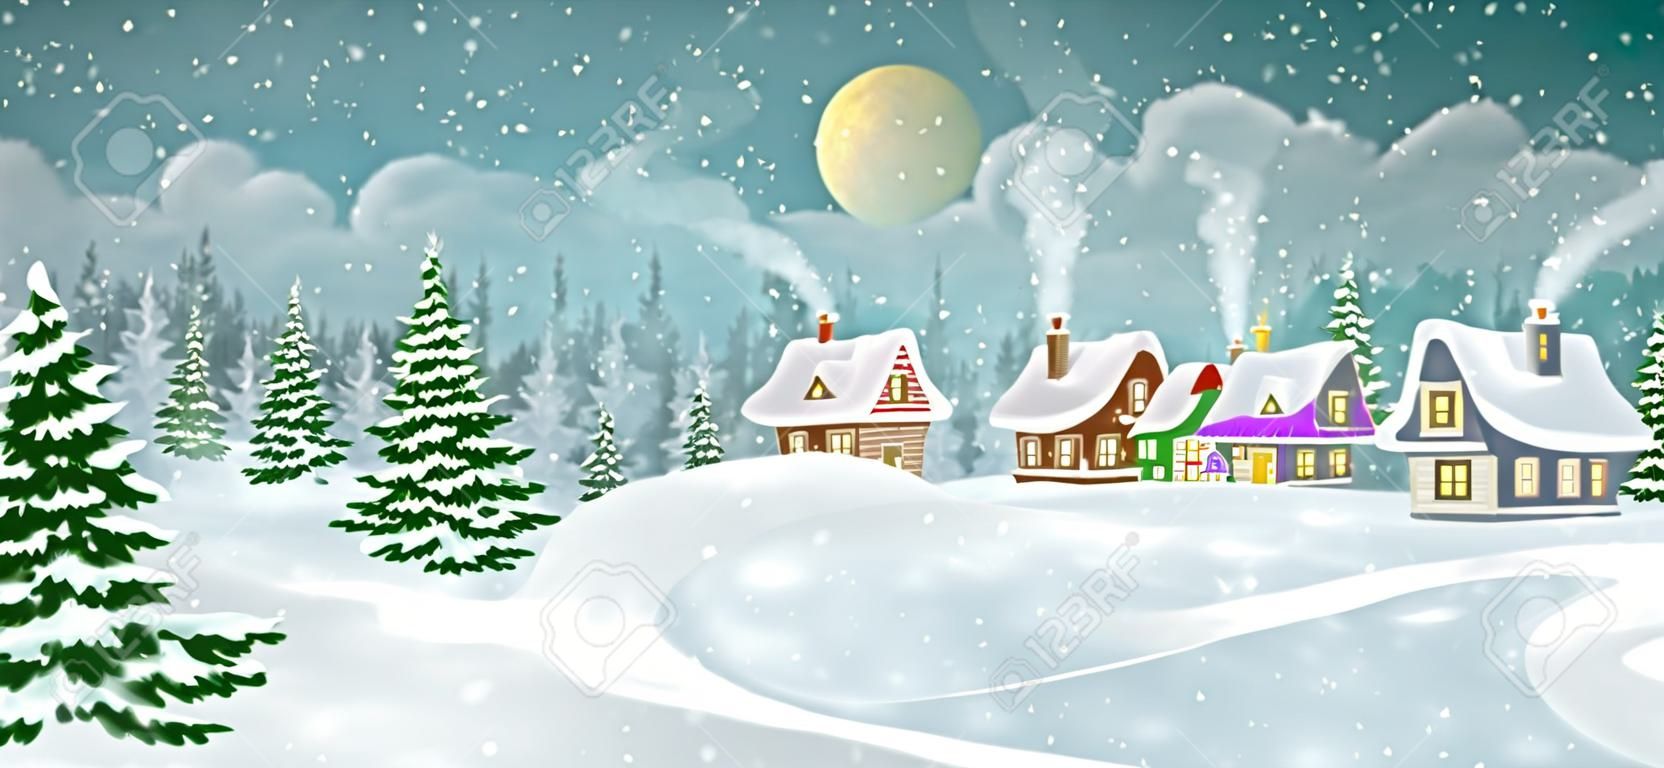 Зимний деревенский пейзаж с сосновым лесом. Маленькие сказочные домики, засыпанные снегом.